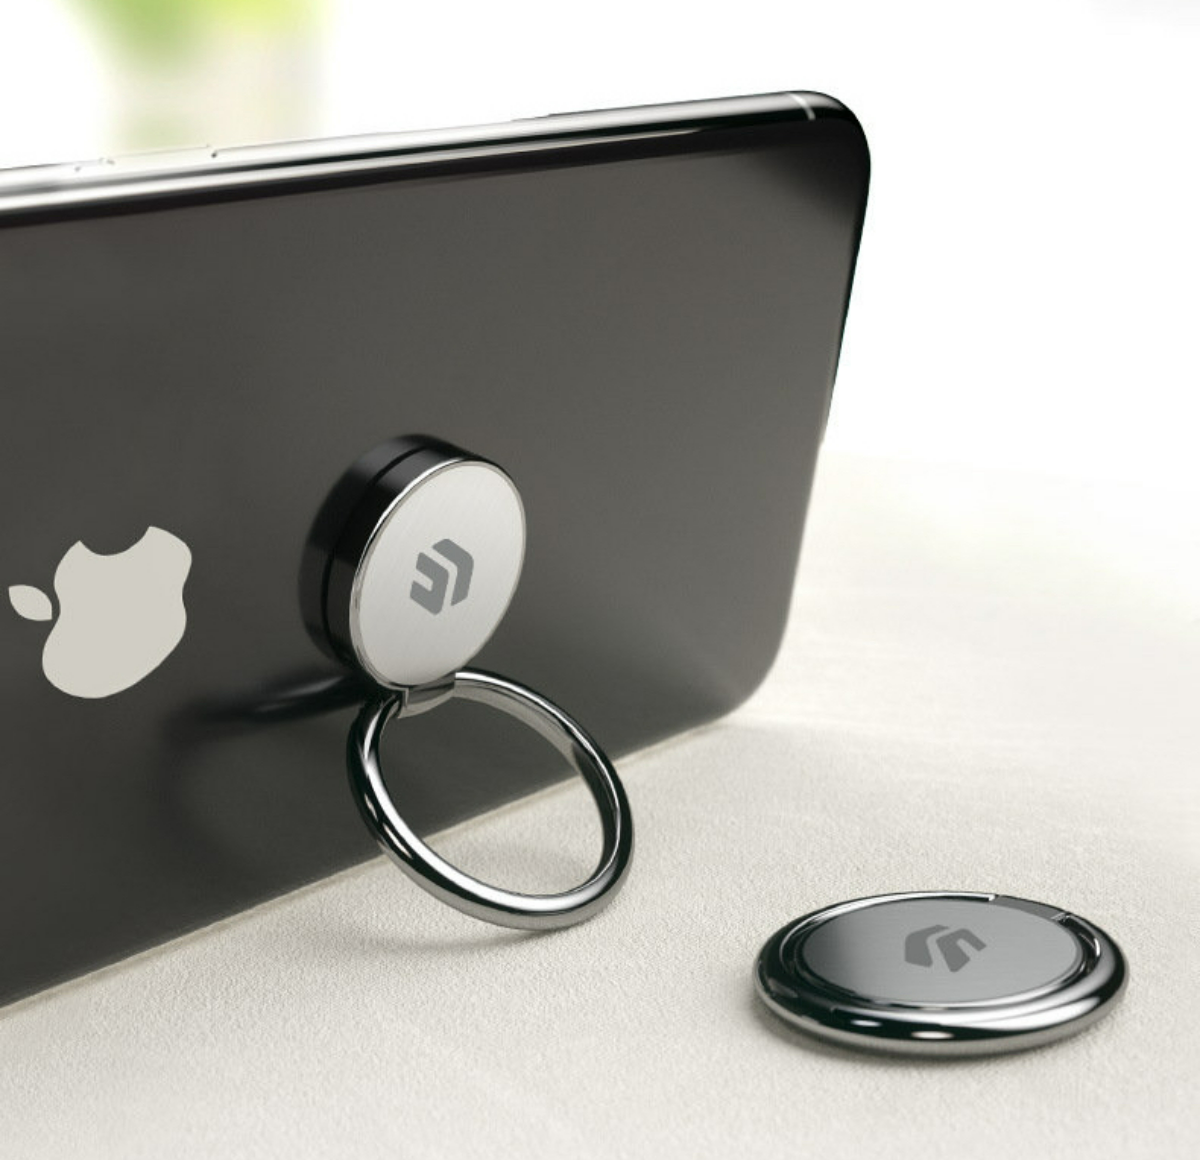 スマホリング│携帯リング・薄型・360°回転・iPhone・強力な吸着力・落下防止・指輪型・片手操作・スタンド機能・iPhone/Android各種他対応